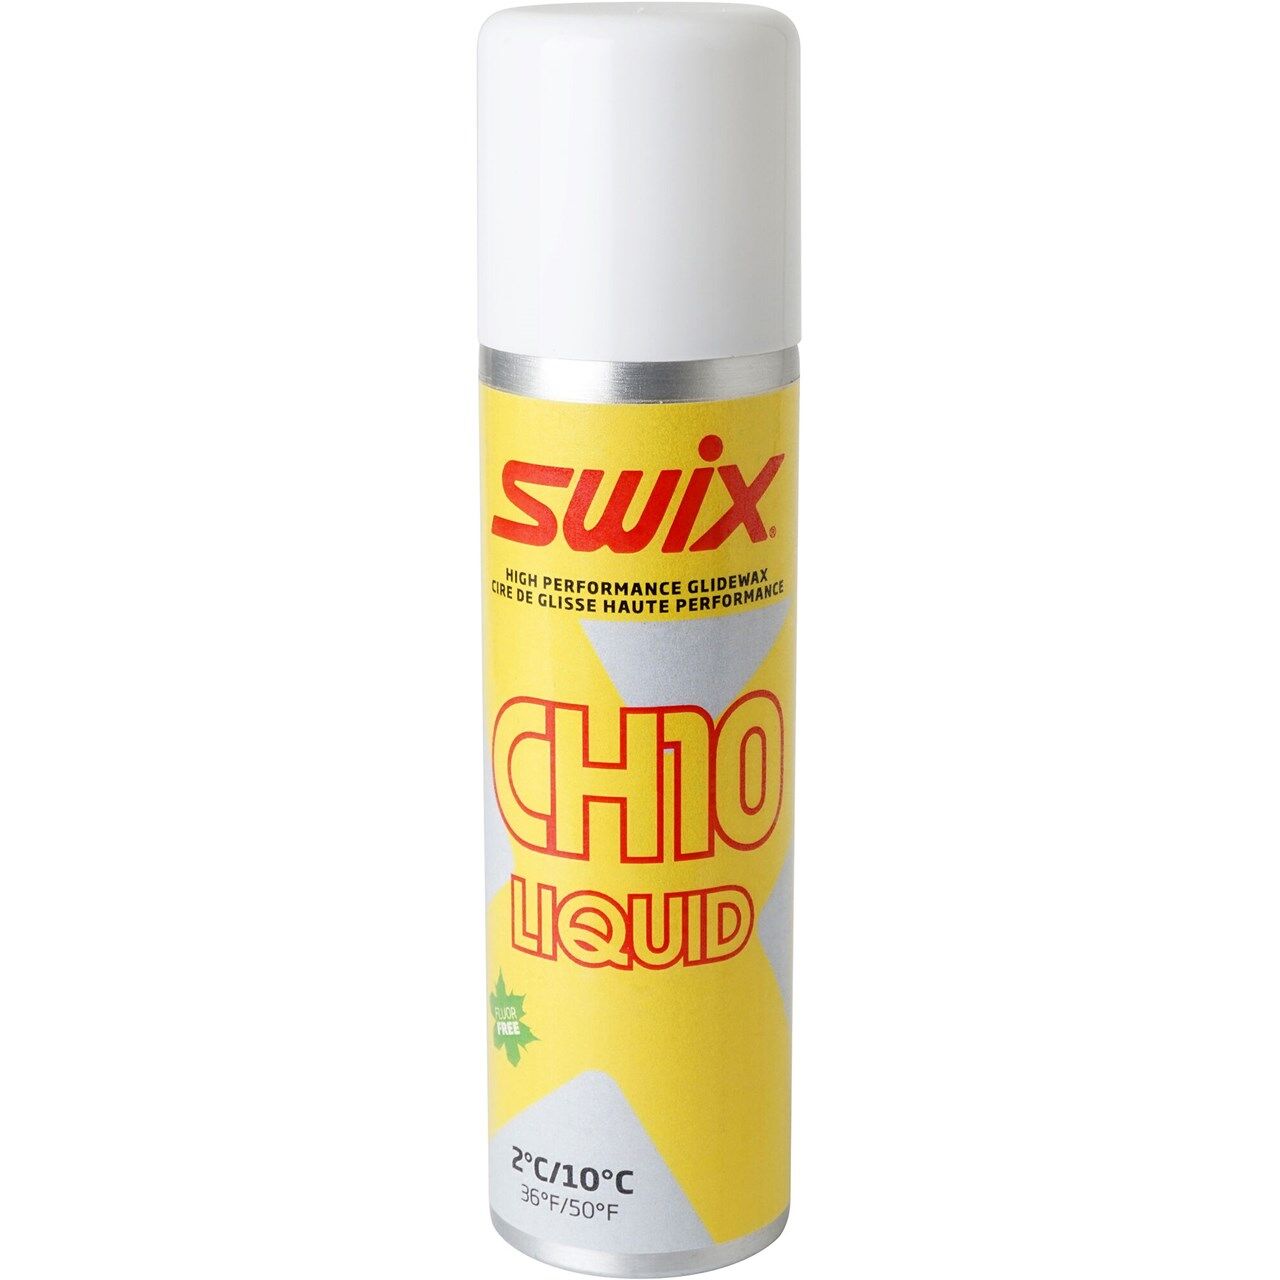 Swix CH10X Liquid 2C/10C (125ml) - Skivoks